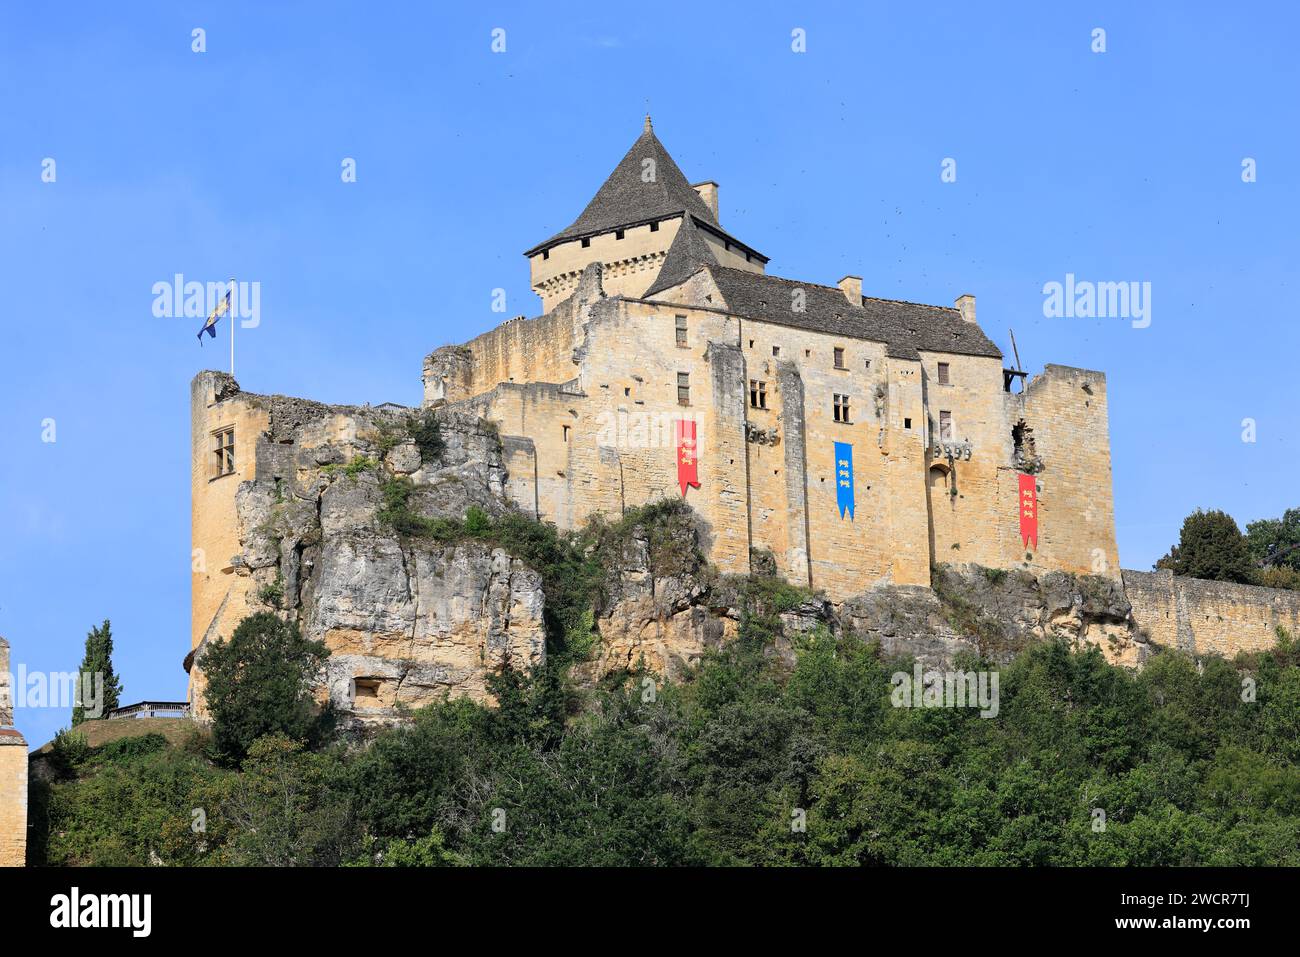 La fortezza medievale di Château de Castelnaud (XIII-XIV secolo) nel Périgord Noir ospita il museo della guerra nel Medioevo. Storia, architettura, Foto Stock